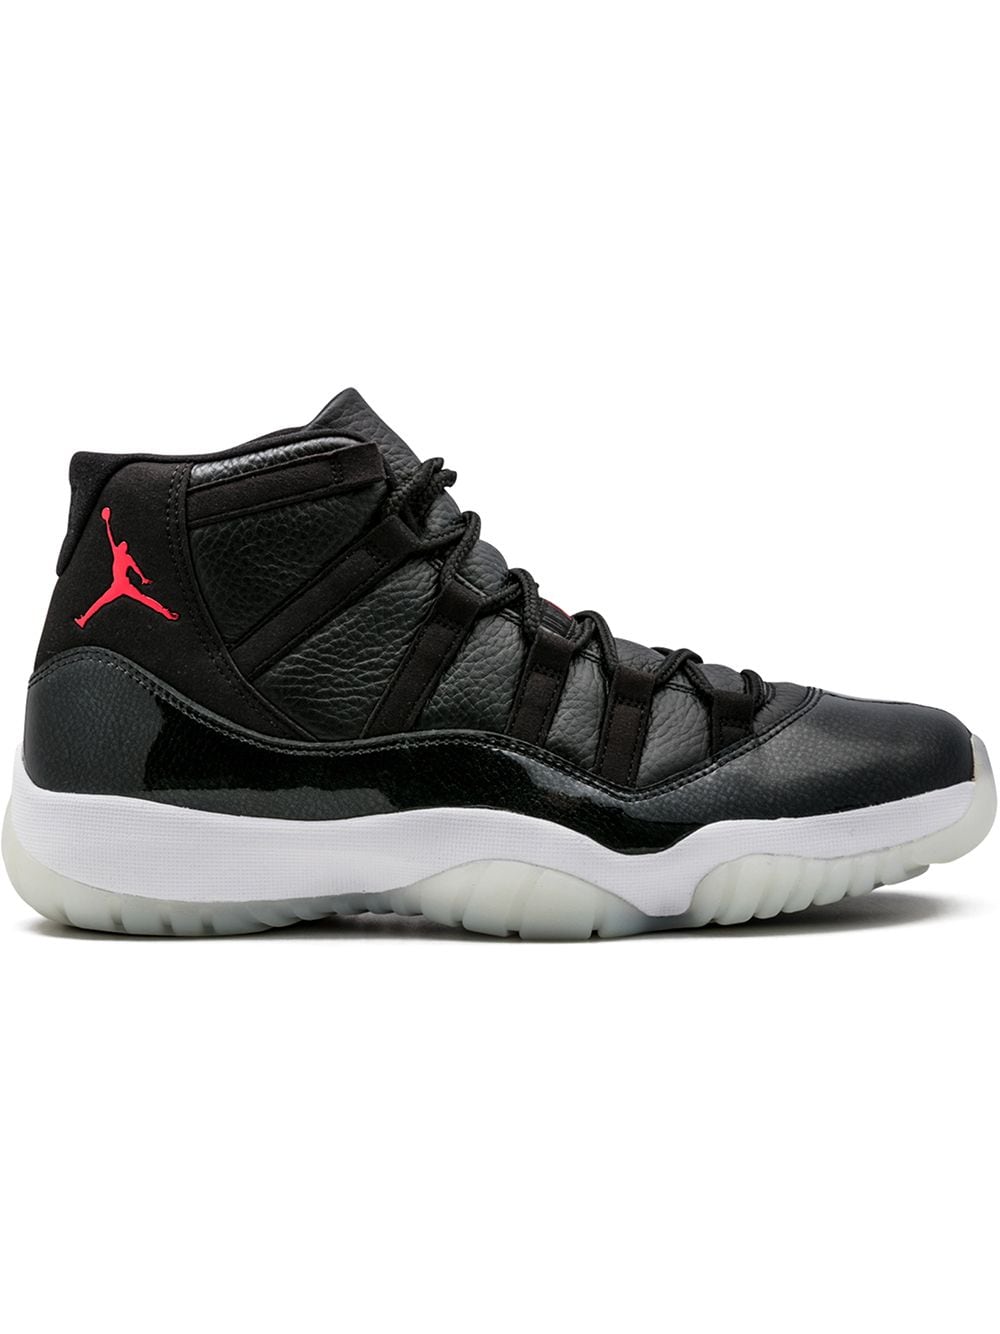 Jordan Air Jordan 11 Retro "72-10" sneakers - Black